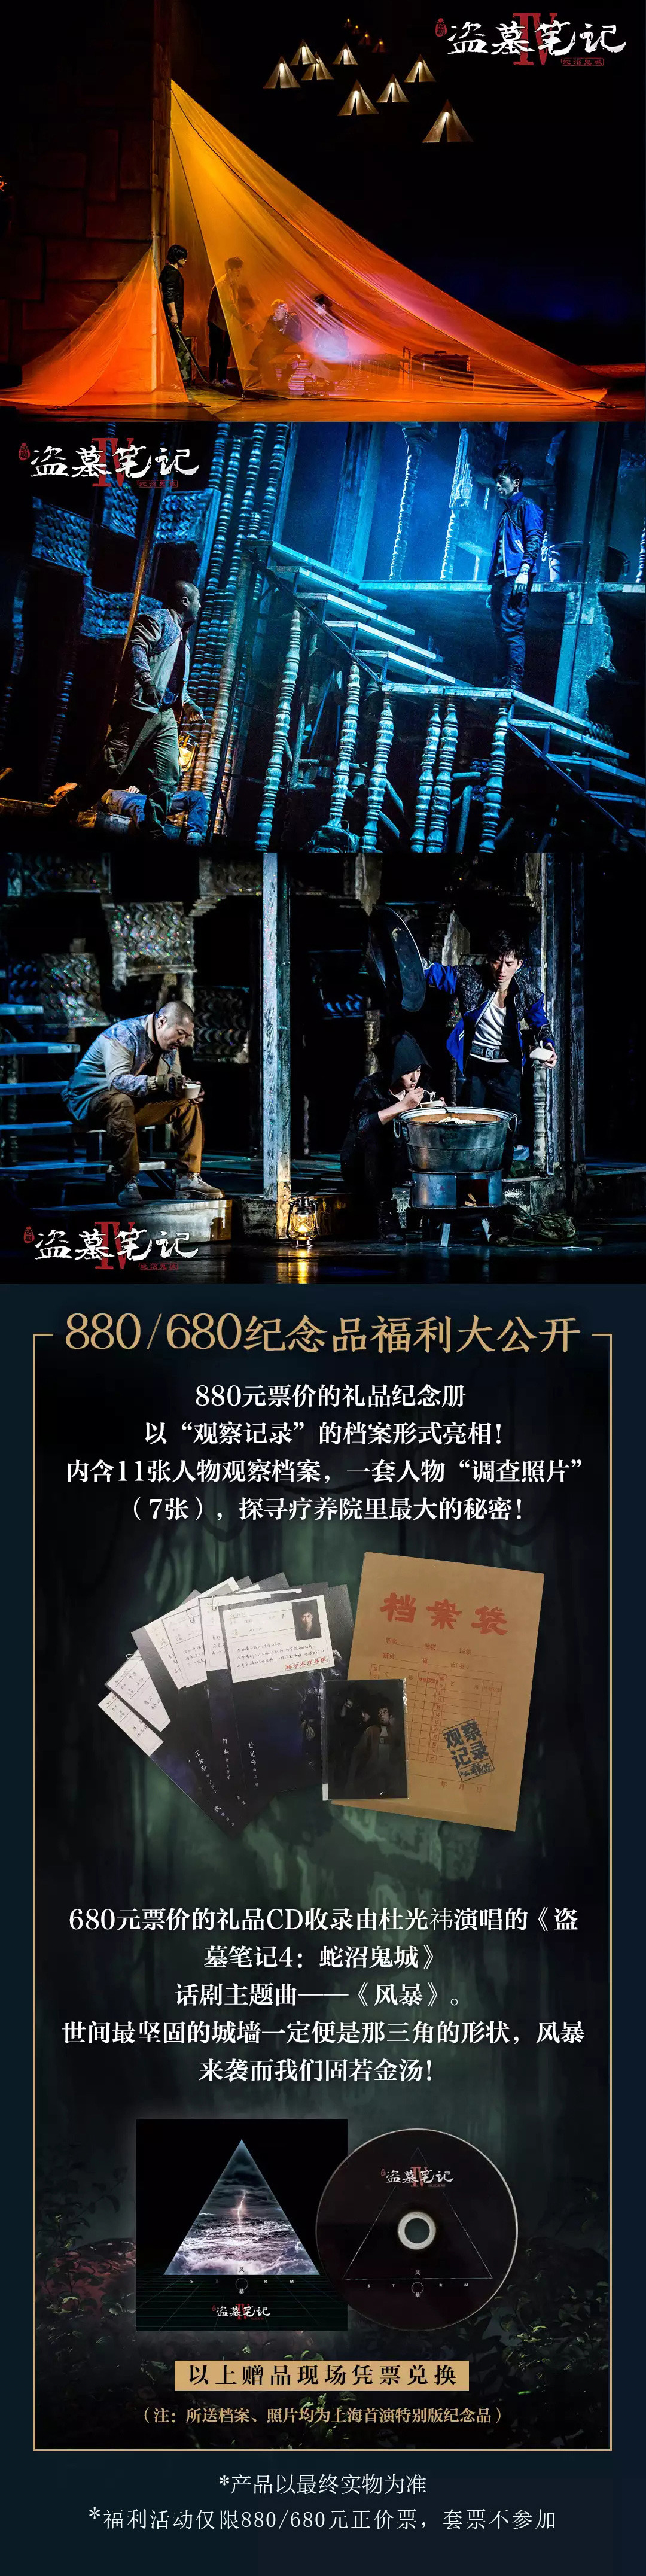 2021大型魔幻惊悚话剧《盗墓笔记IV：蛇沼鬼城》-南京站